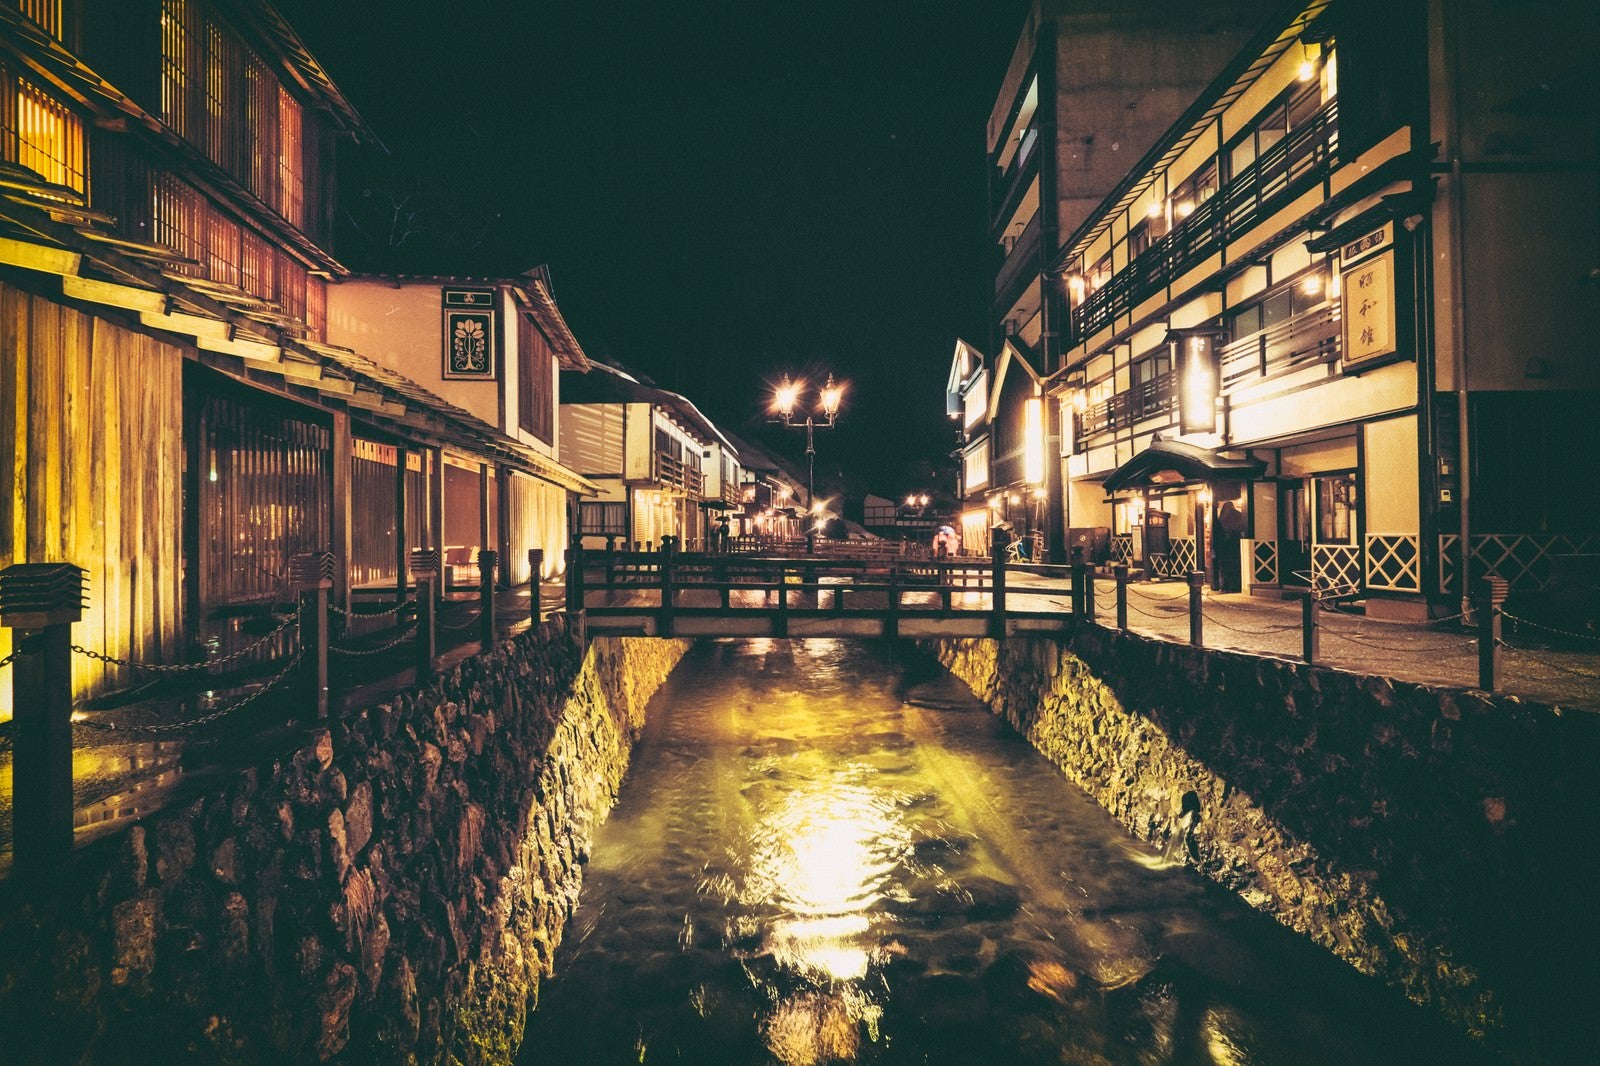 「銀山温泉街と中央に流れる銀山川（夜間）」の写真